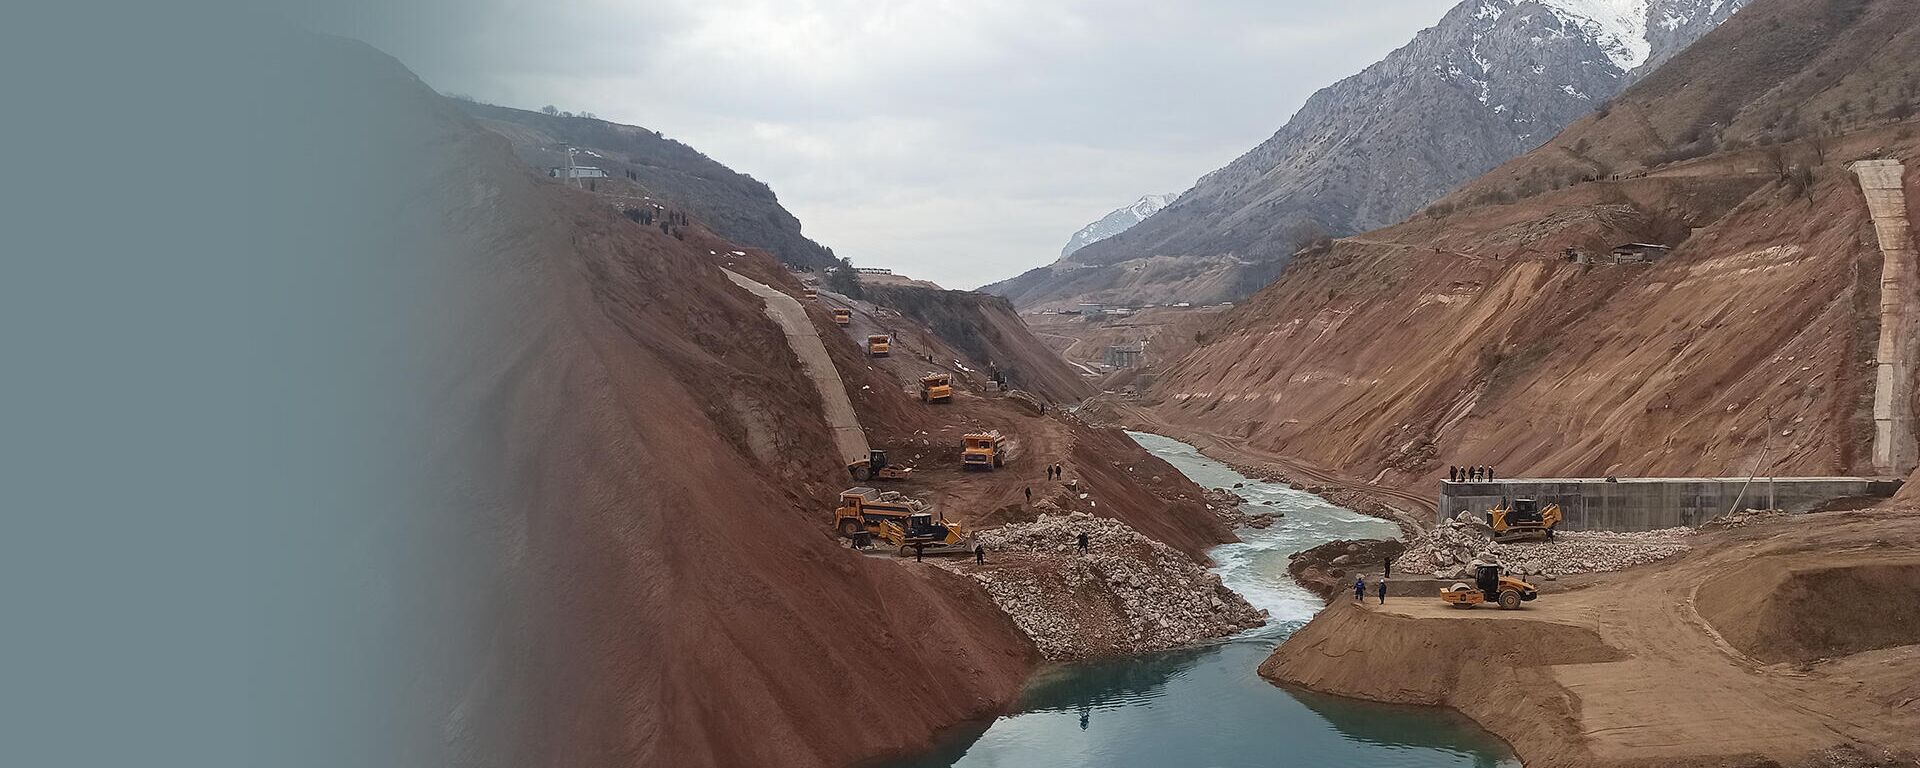 В Узбекистане перекрыли реку для строительства новой ГЭС - Sputnik Узбекистан, 1920, 26.11.2021